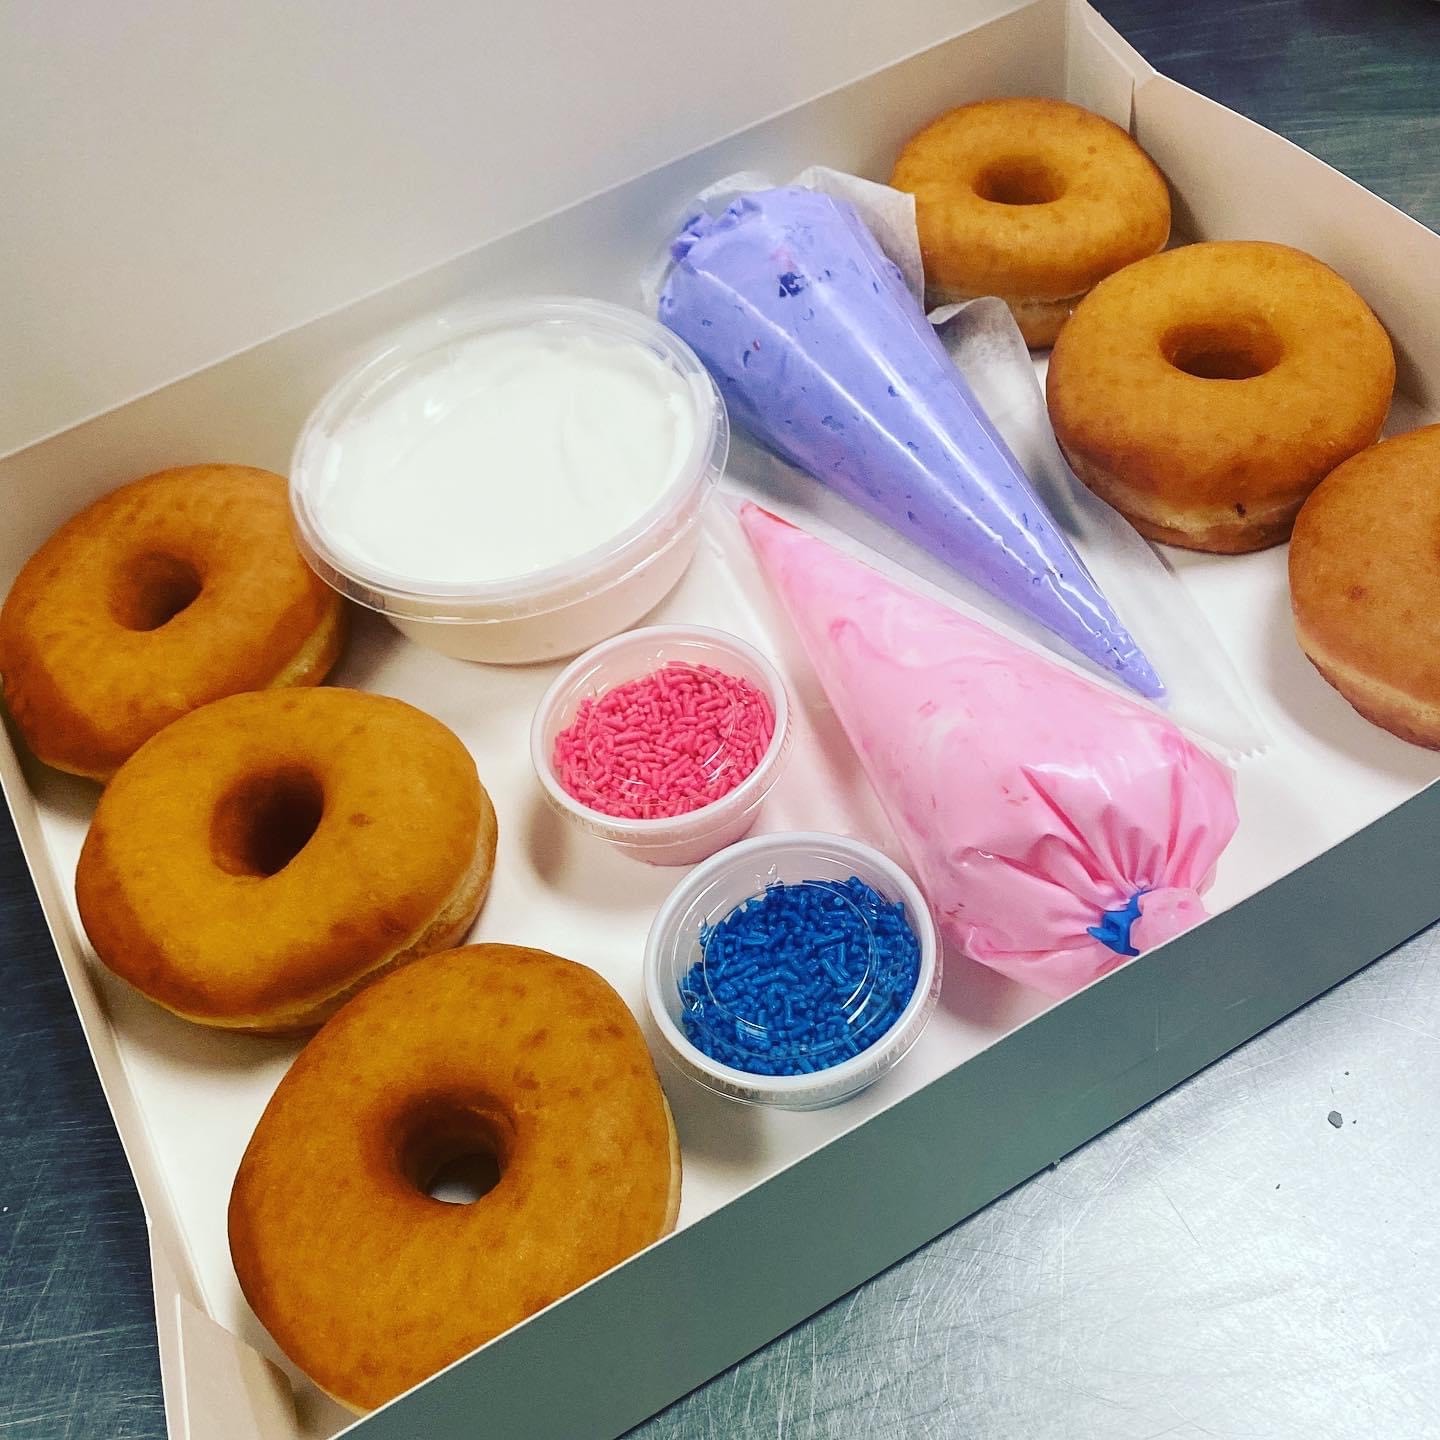 DIY Donut Decorating Kit at Joey Bag A Donuts